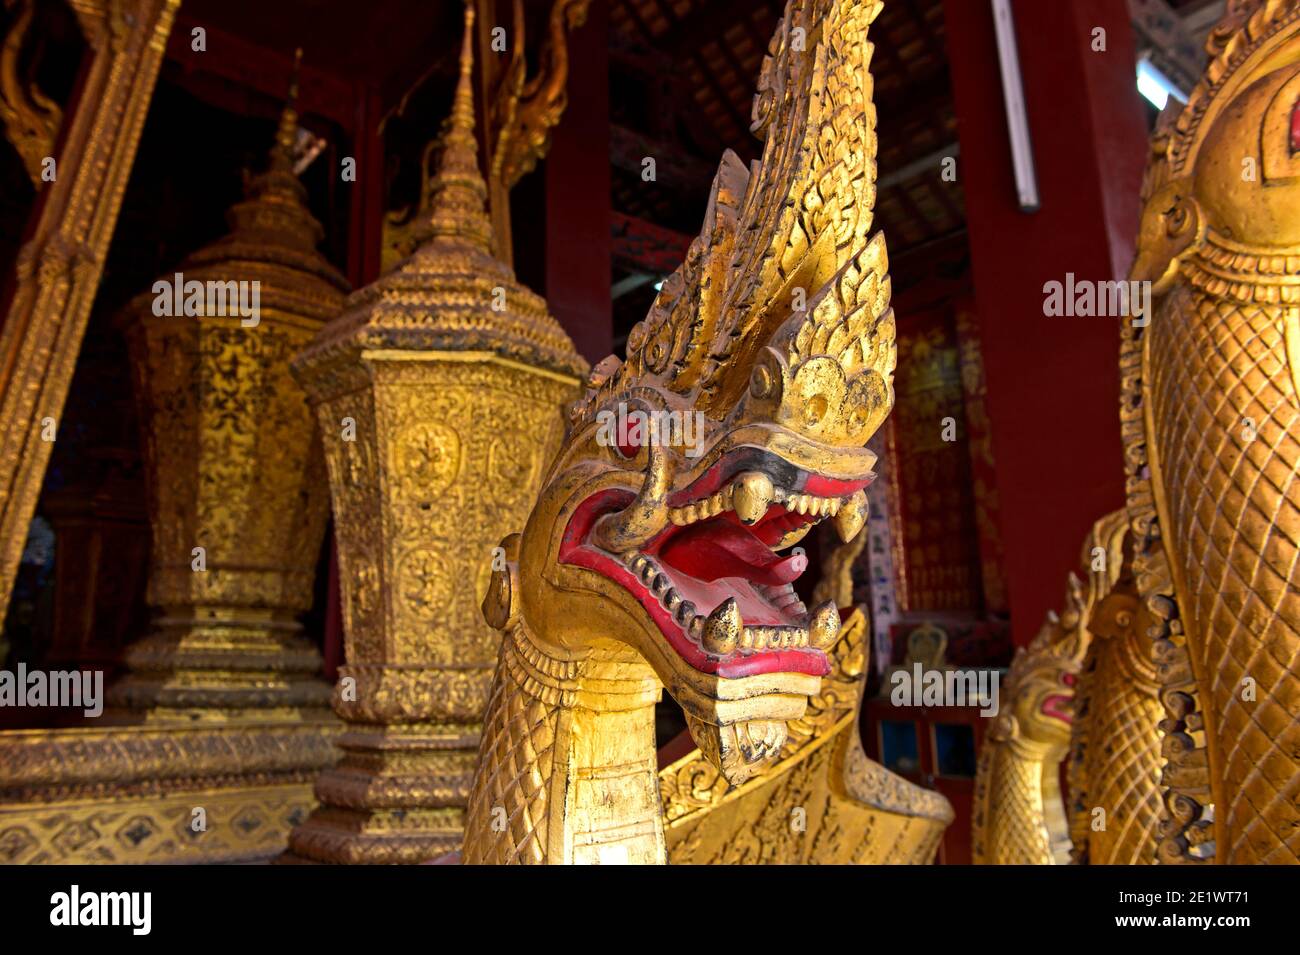 Naga tête de serpent de la calèche royale d'or, maison de calèche funéraire royale, Temple Wat Xieng Thong, Luang Prabang, Laos Banque D'Images